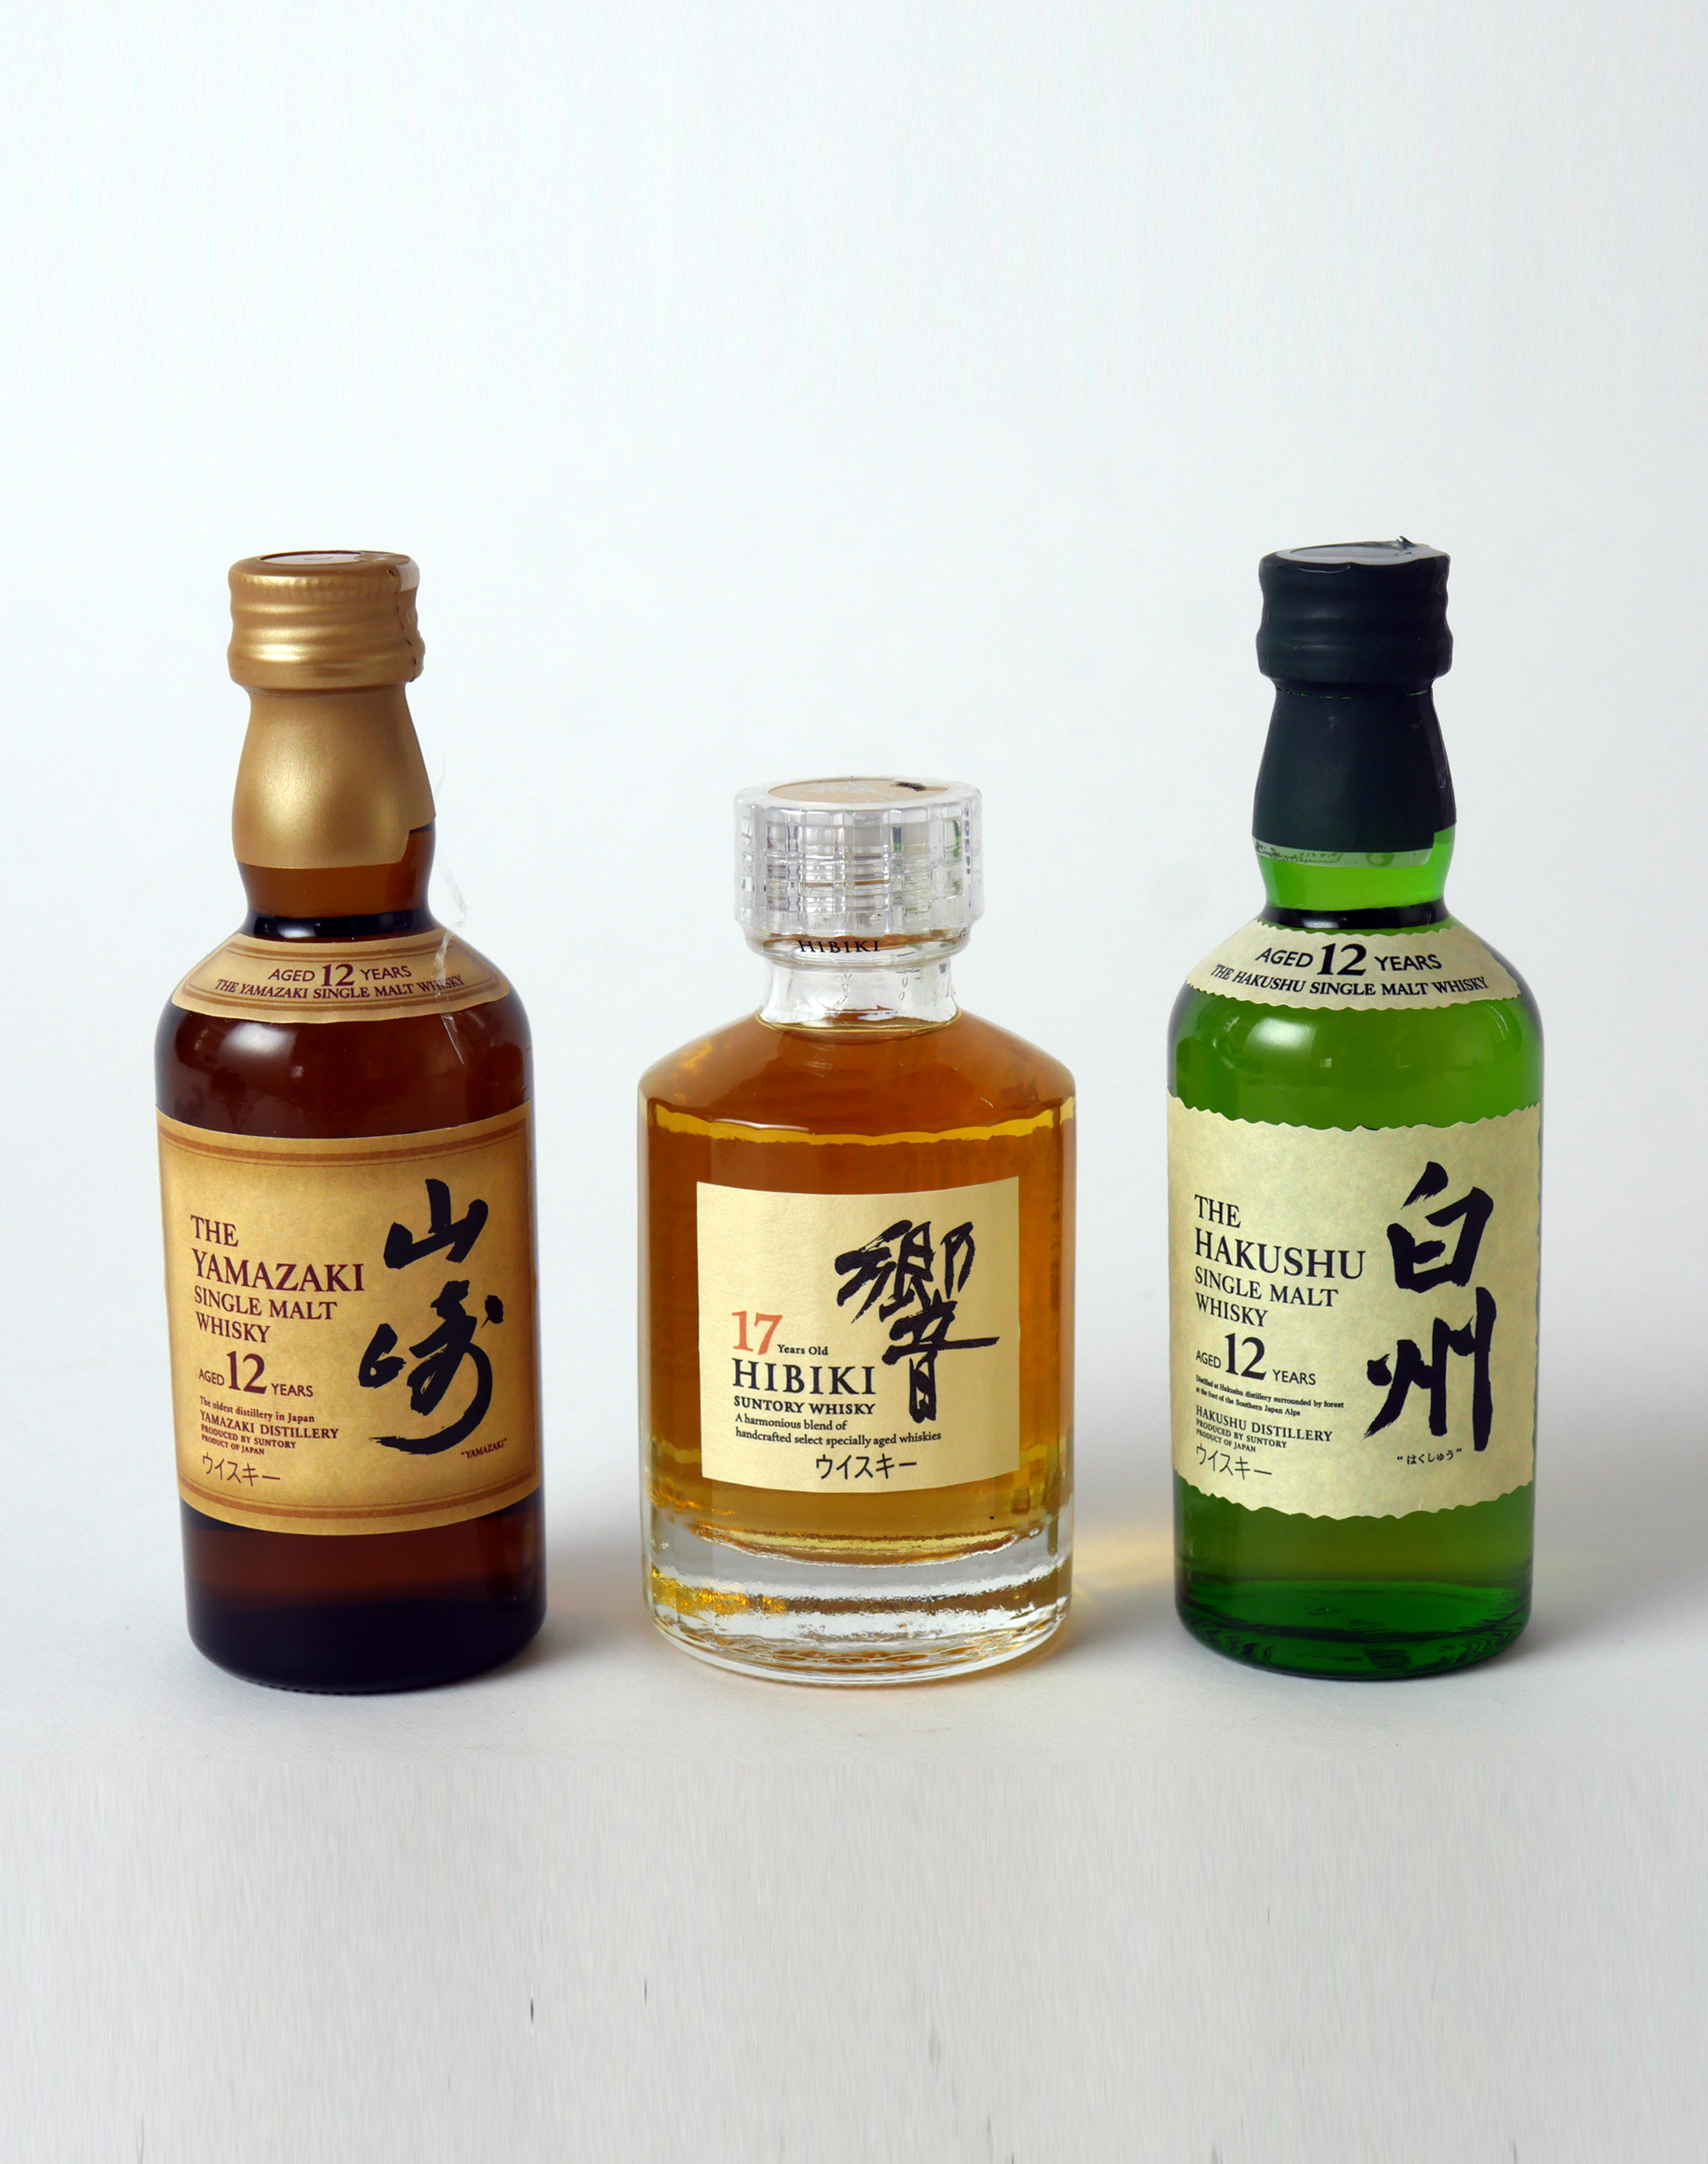 Buy Suntory Miniature Gift Set, Japanese Whisky Online